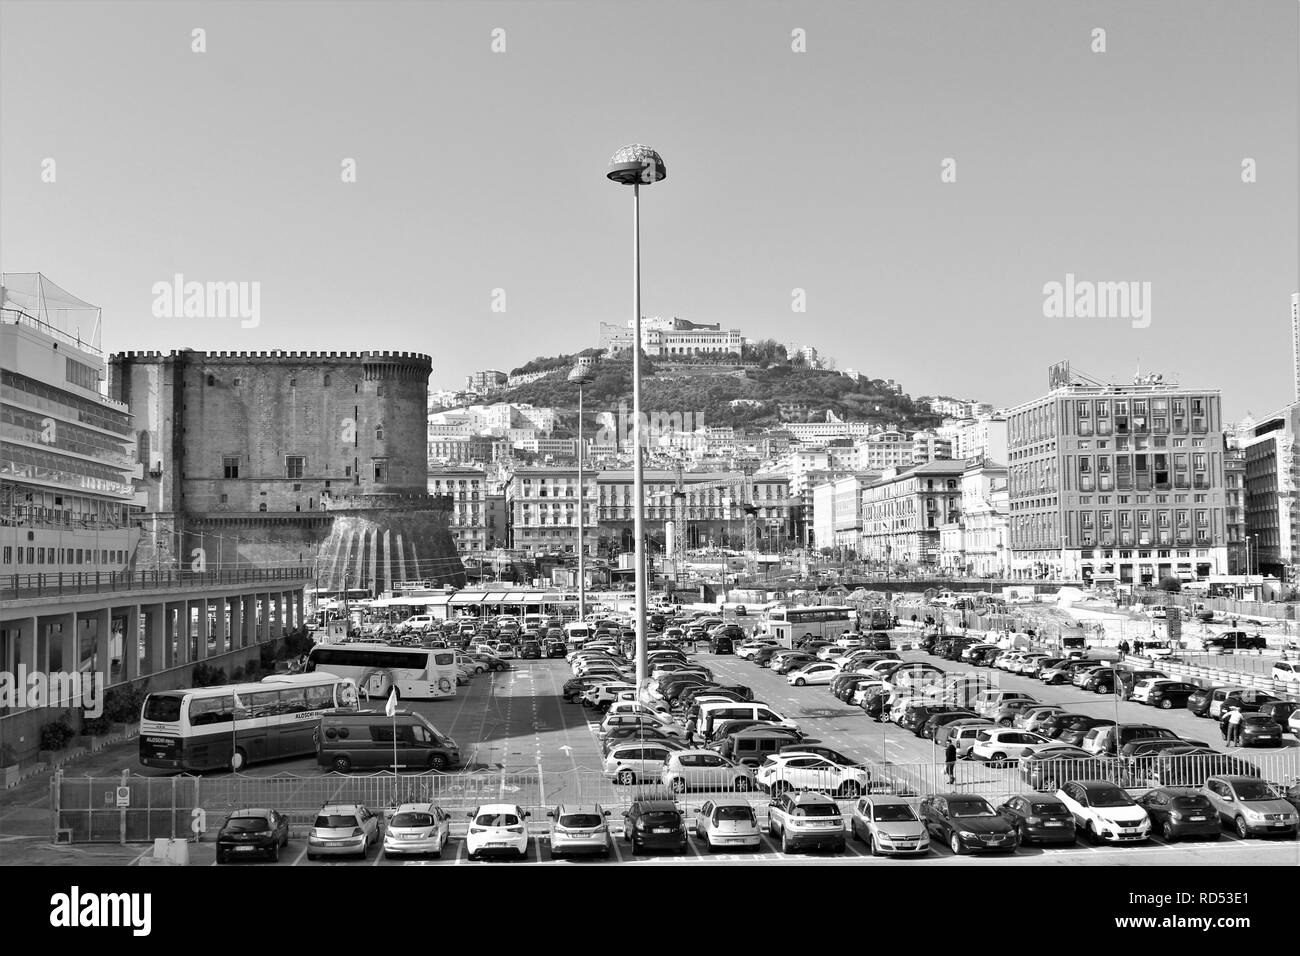 Napoli, Italia - 23 Ottobre 2018: Pomeriggio Vista del trafficato porto e città di Napoli. Foto Stock